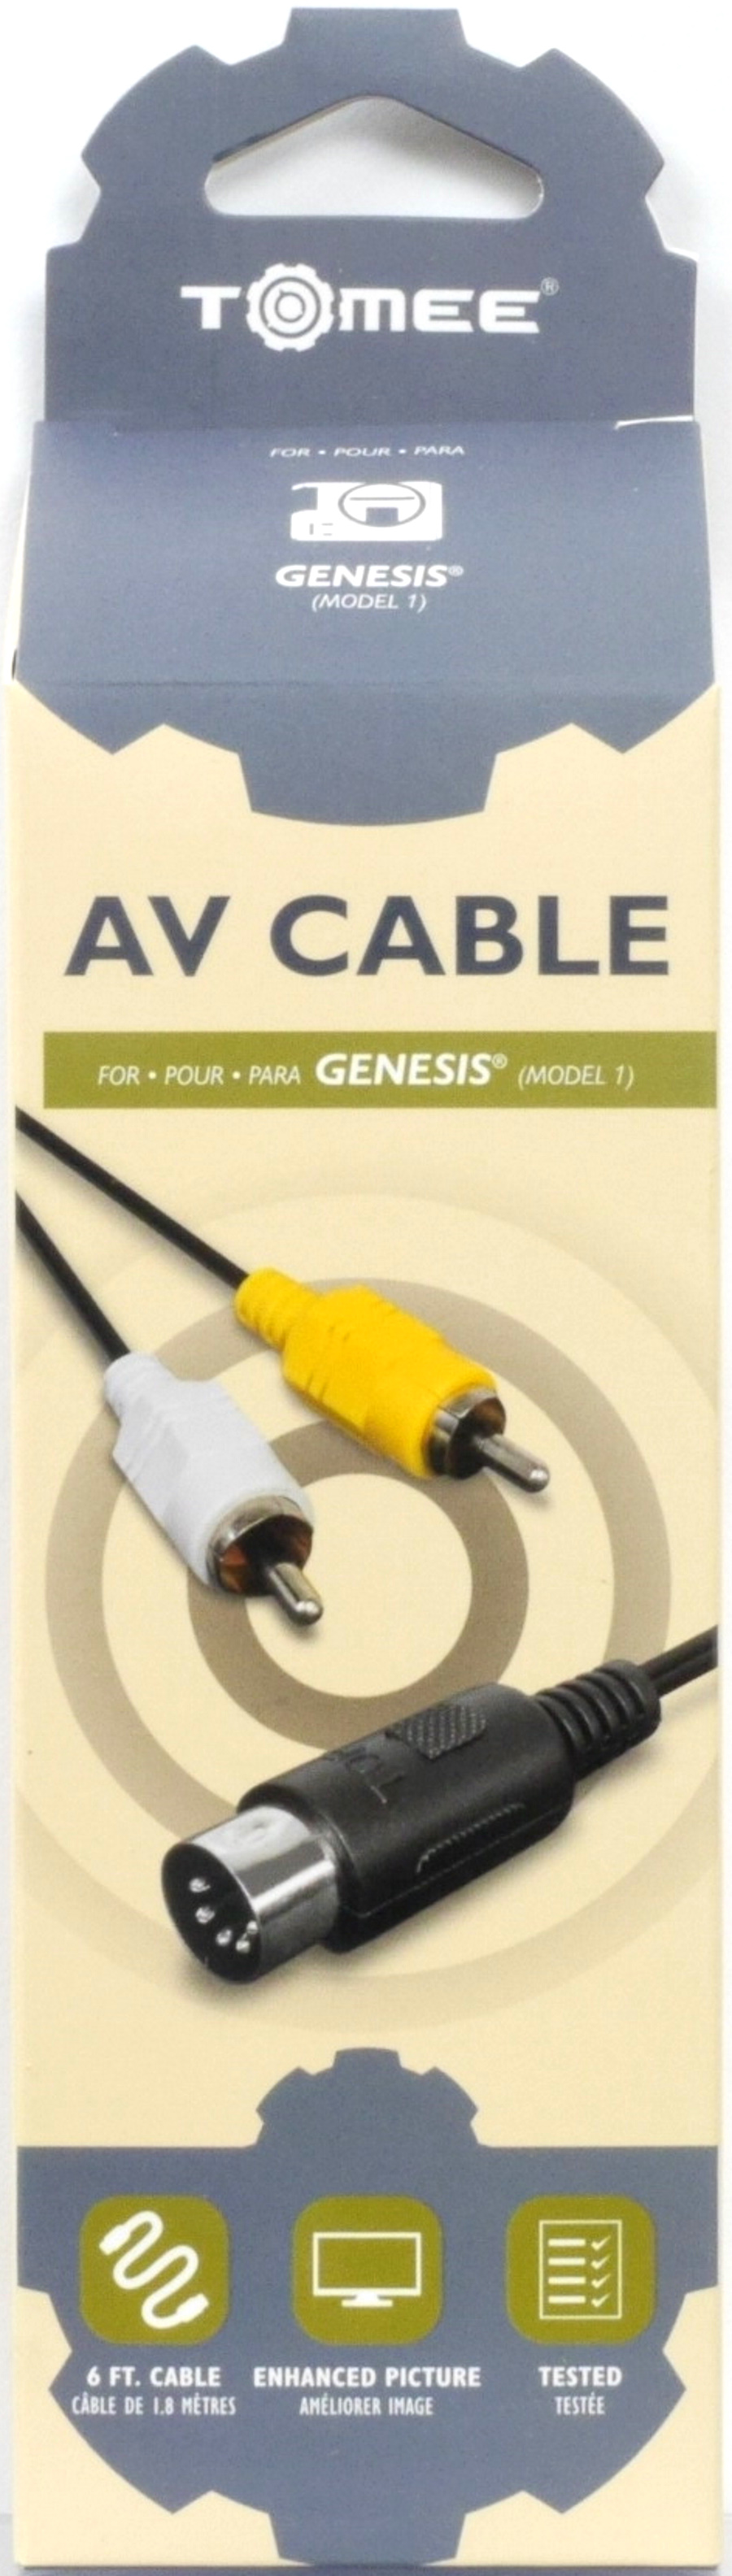 Genesis 1 AV Cable - Tomee (X4)